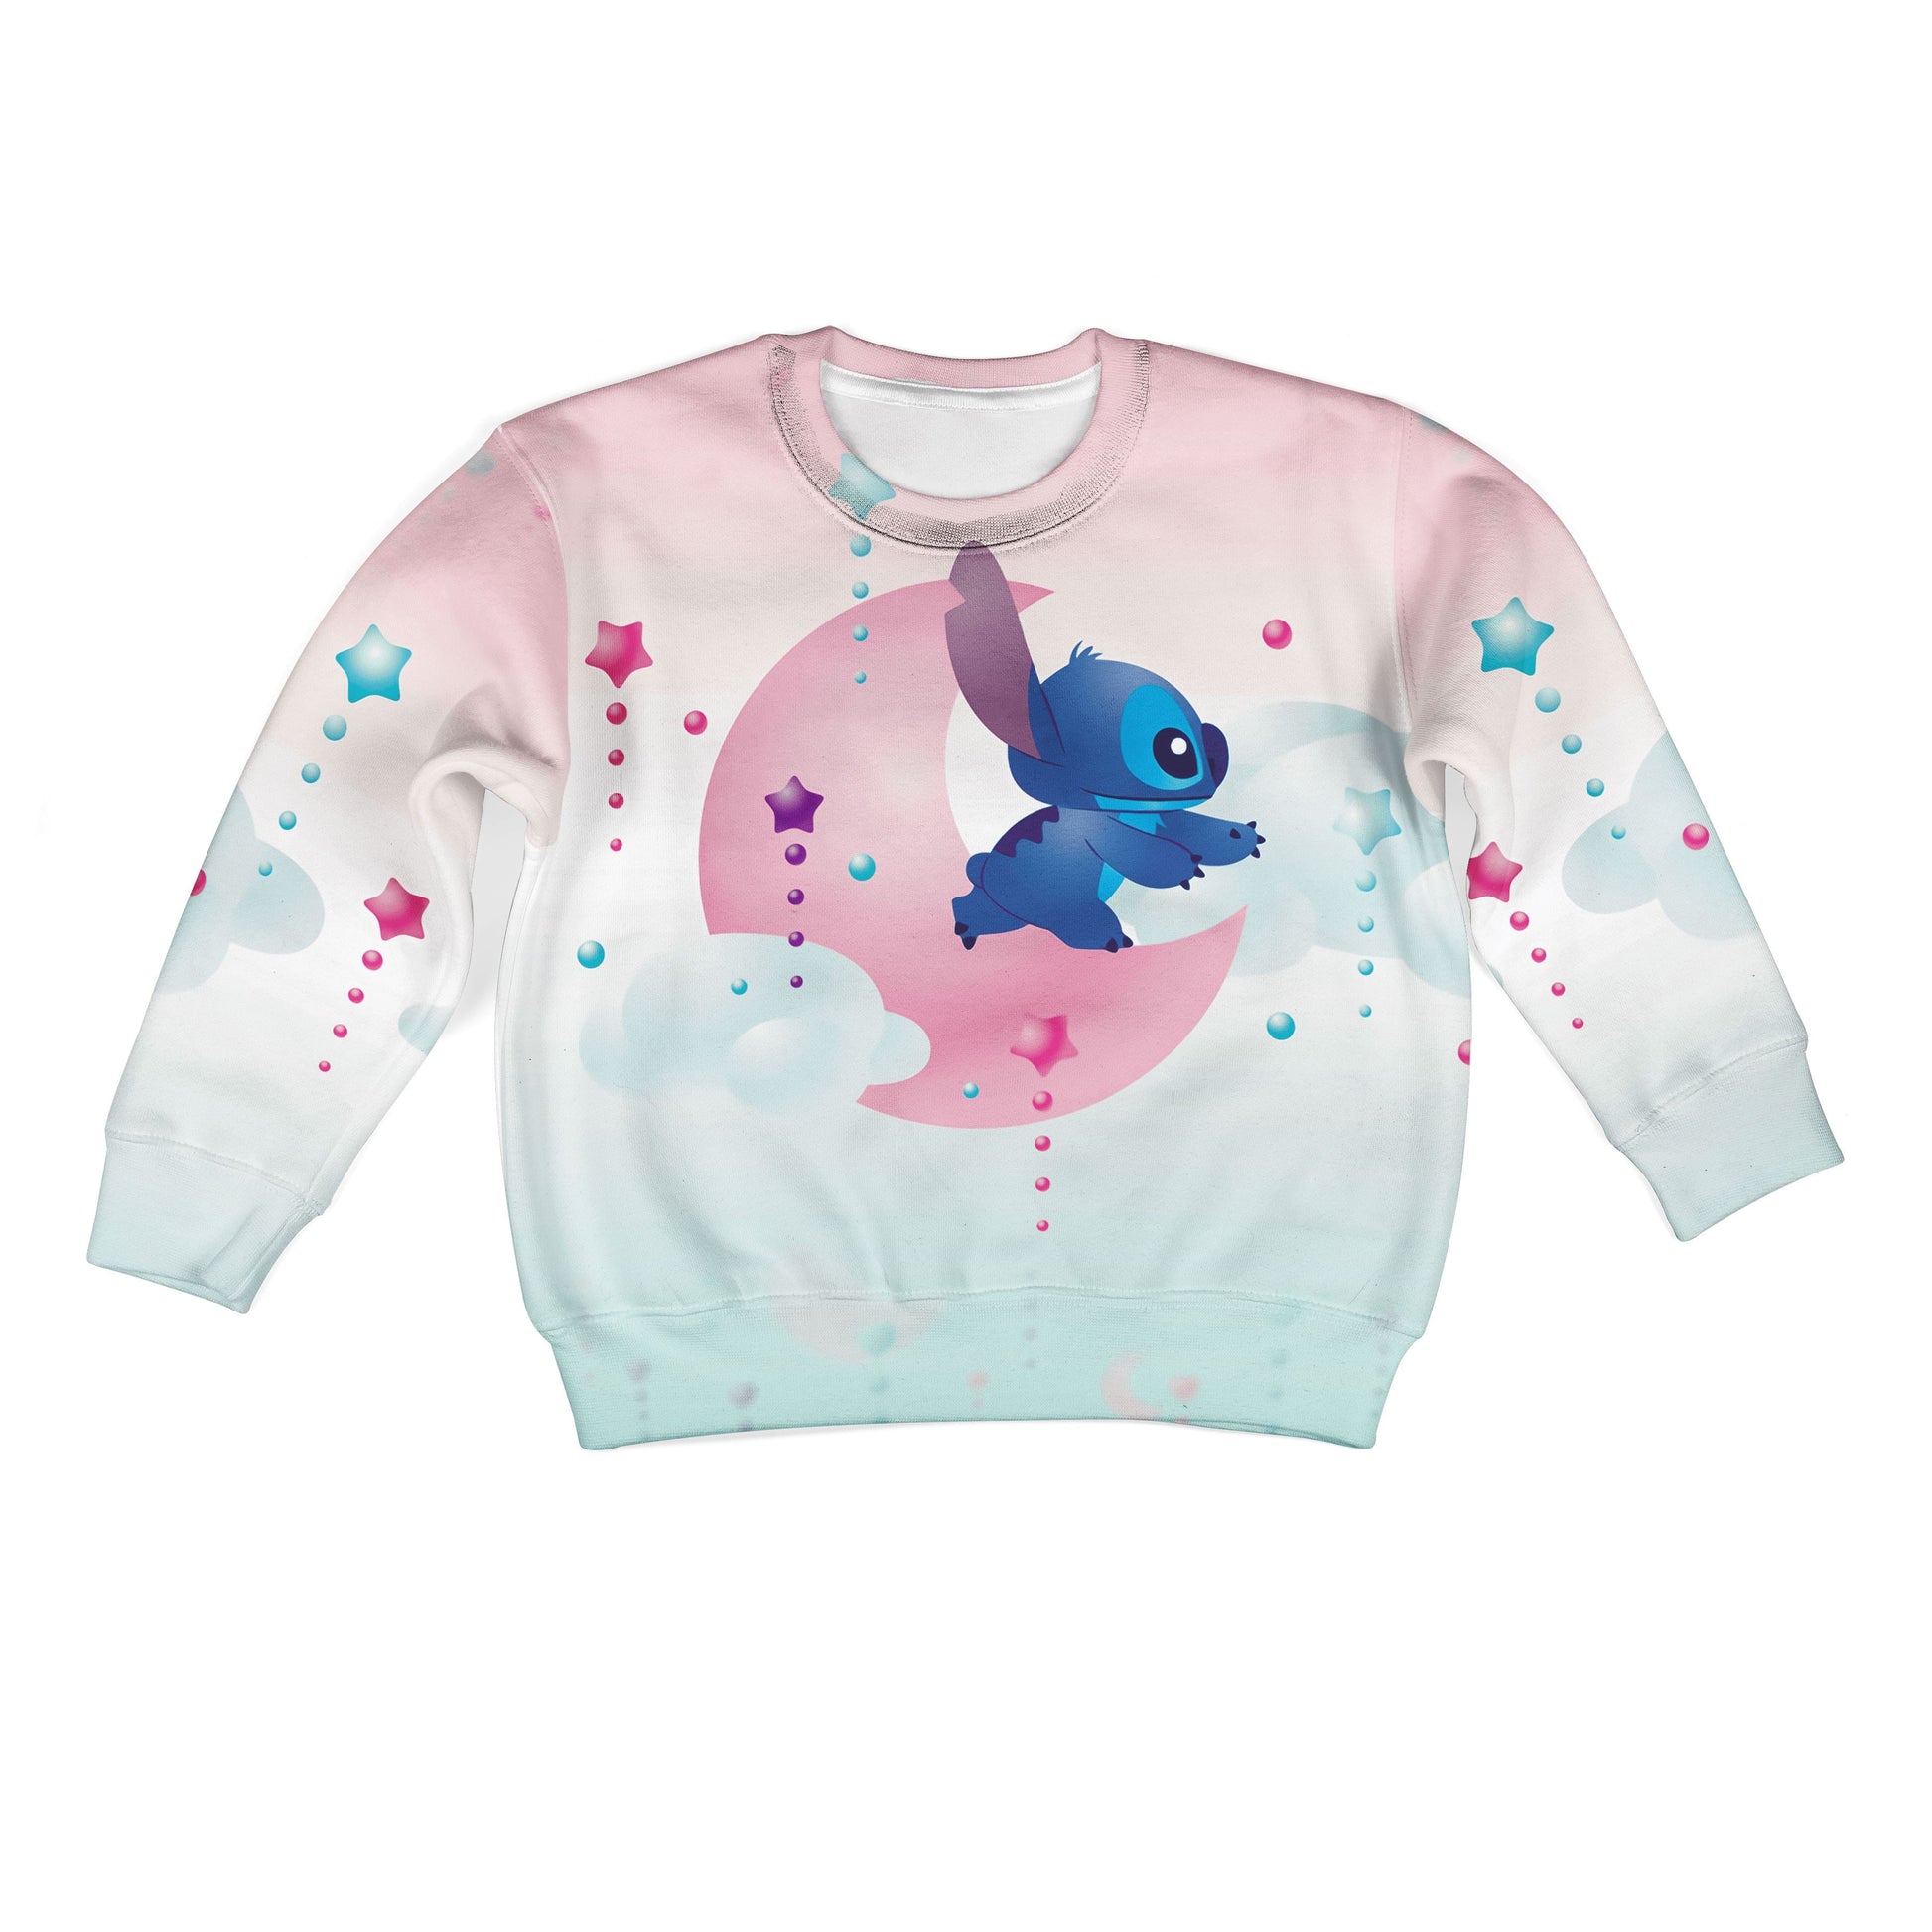 Stitch Kid Custom Hoodies T-shirt Apparel HD-PET110331K kid 3D apparel Kid Sweatshirt S/6-8 